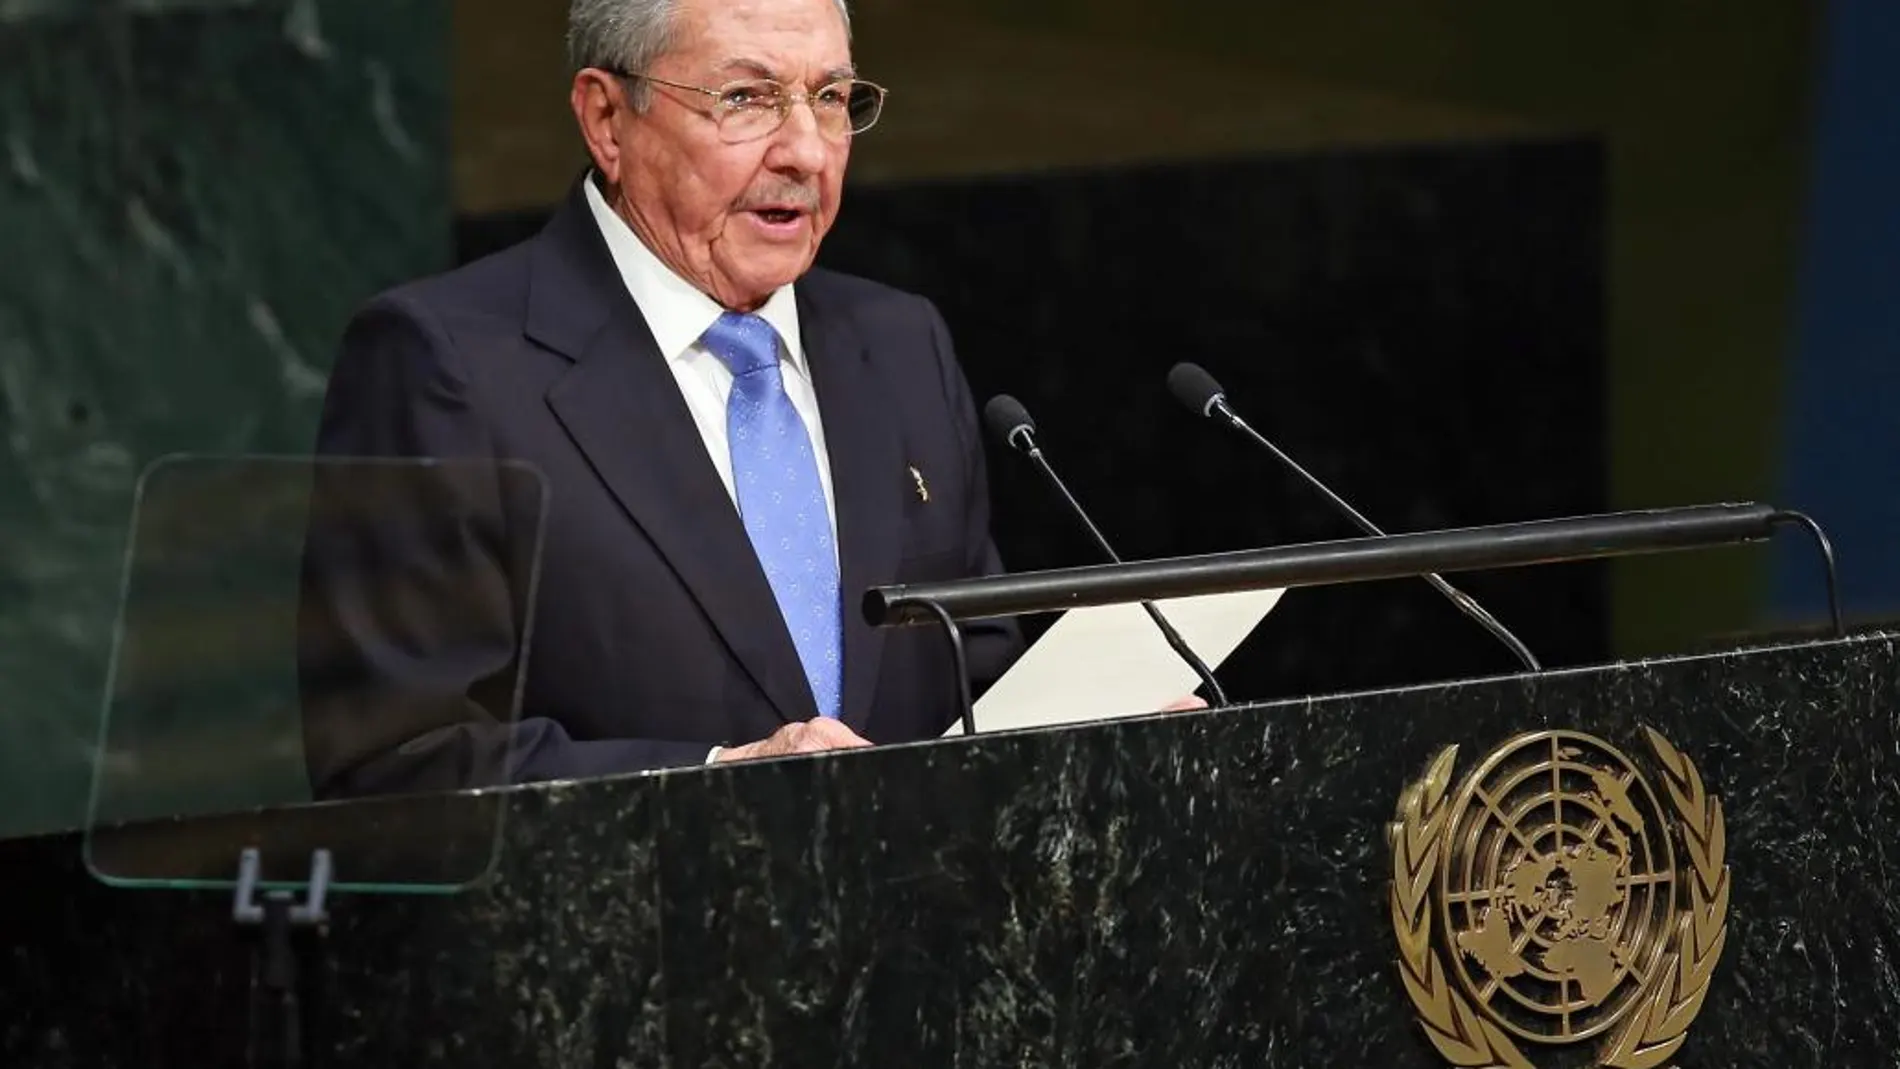 El presidente cubano Raúl Castro habla el lunes 28 de septiembre de 2015, durante la Asamblea General de la ONU que se celebra en su sede en Nueva York (Estados Unidos)